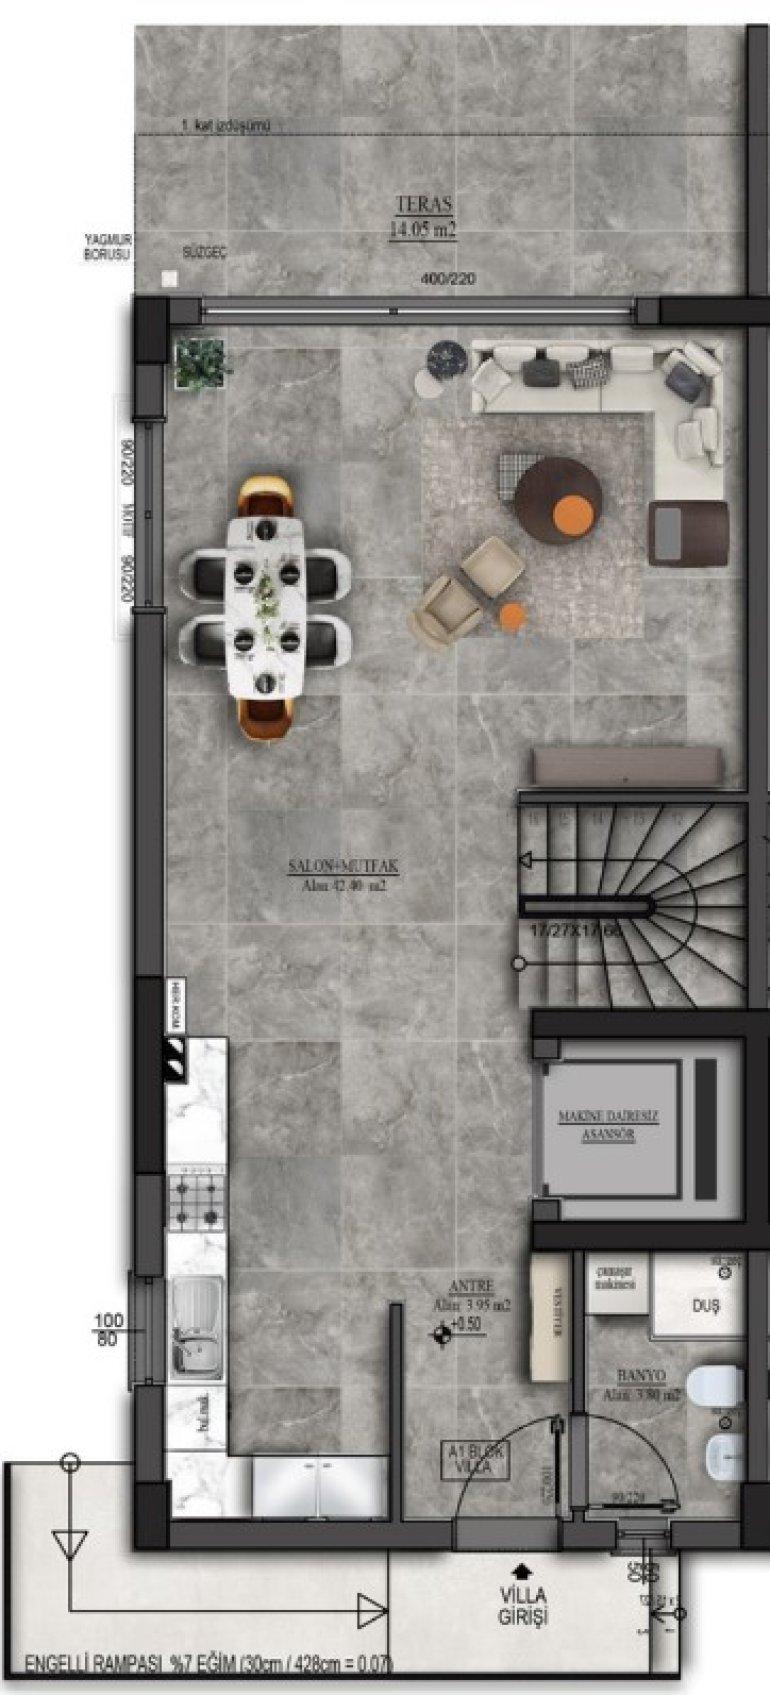 Tor Beylikdüzü Floor Plan